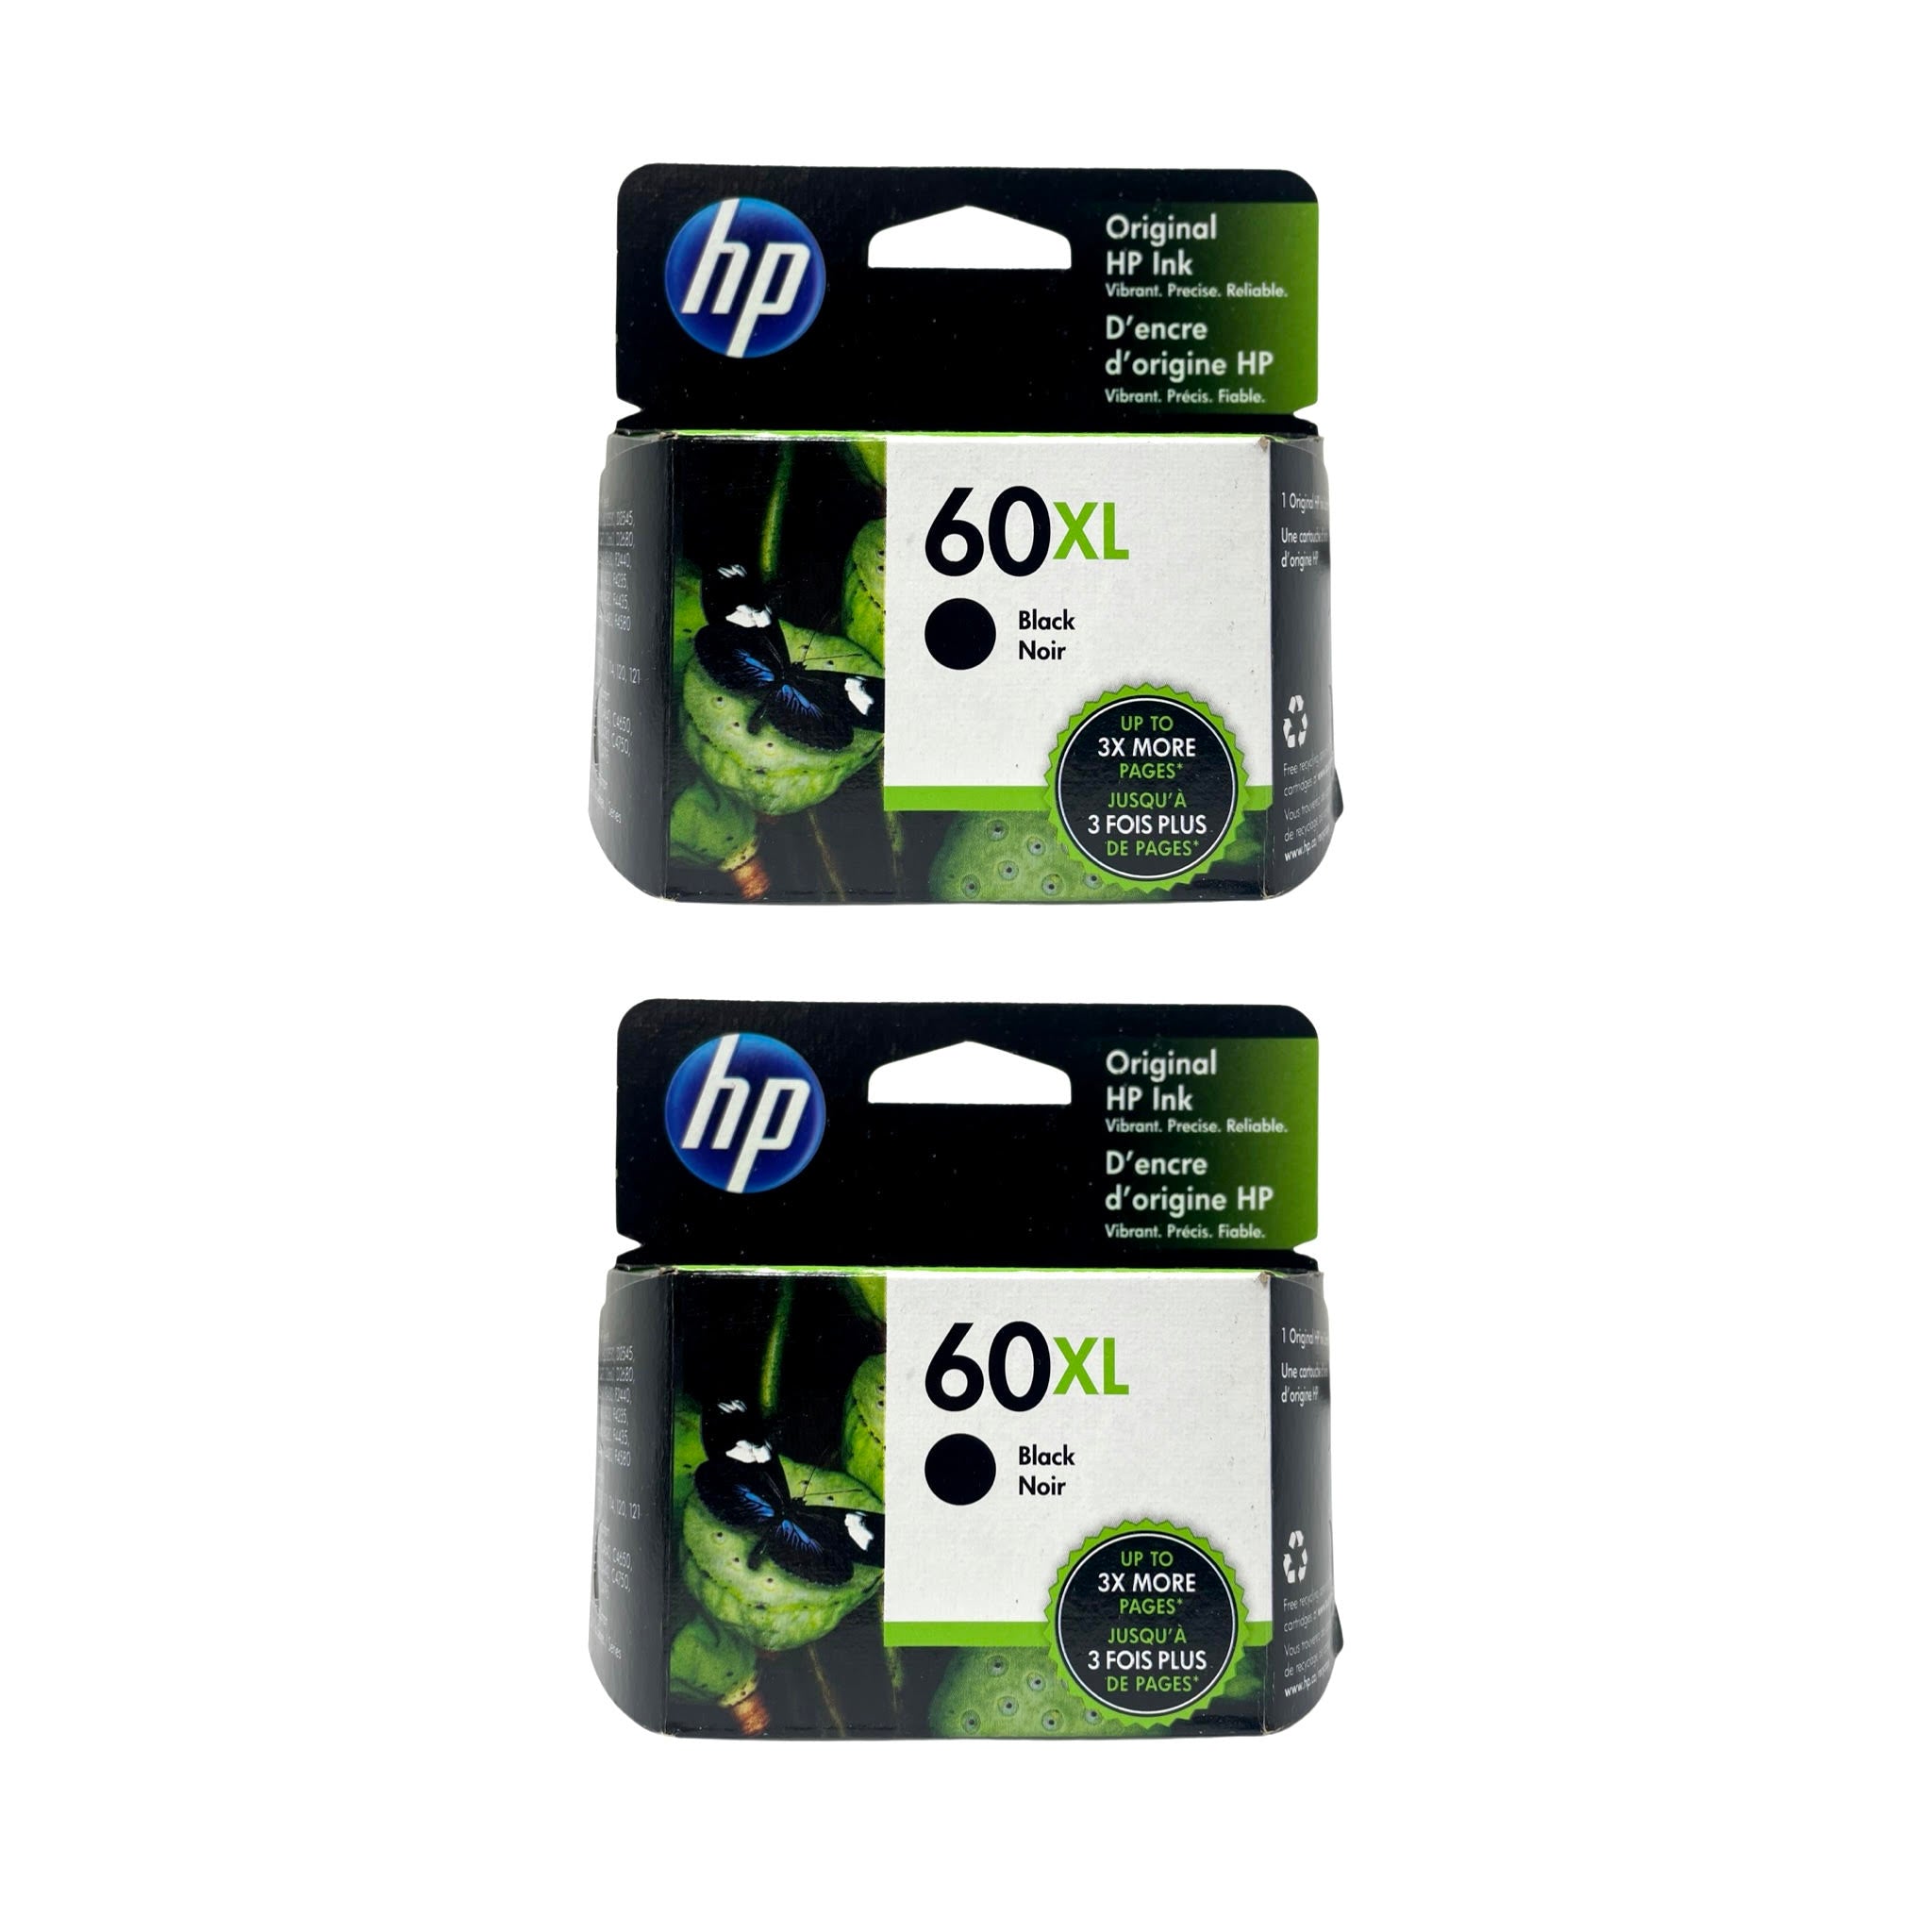 HP 60XL High Yield Ink 2 Pack - Black - Original HP Ink Cartridges